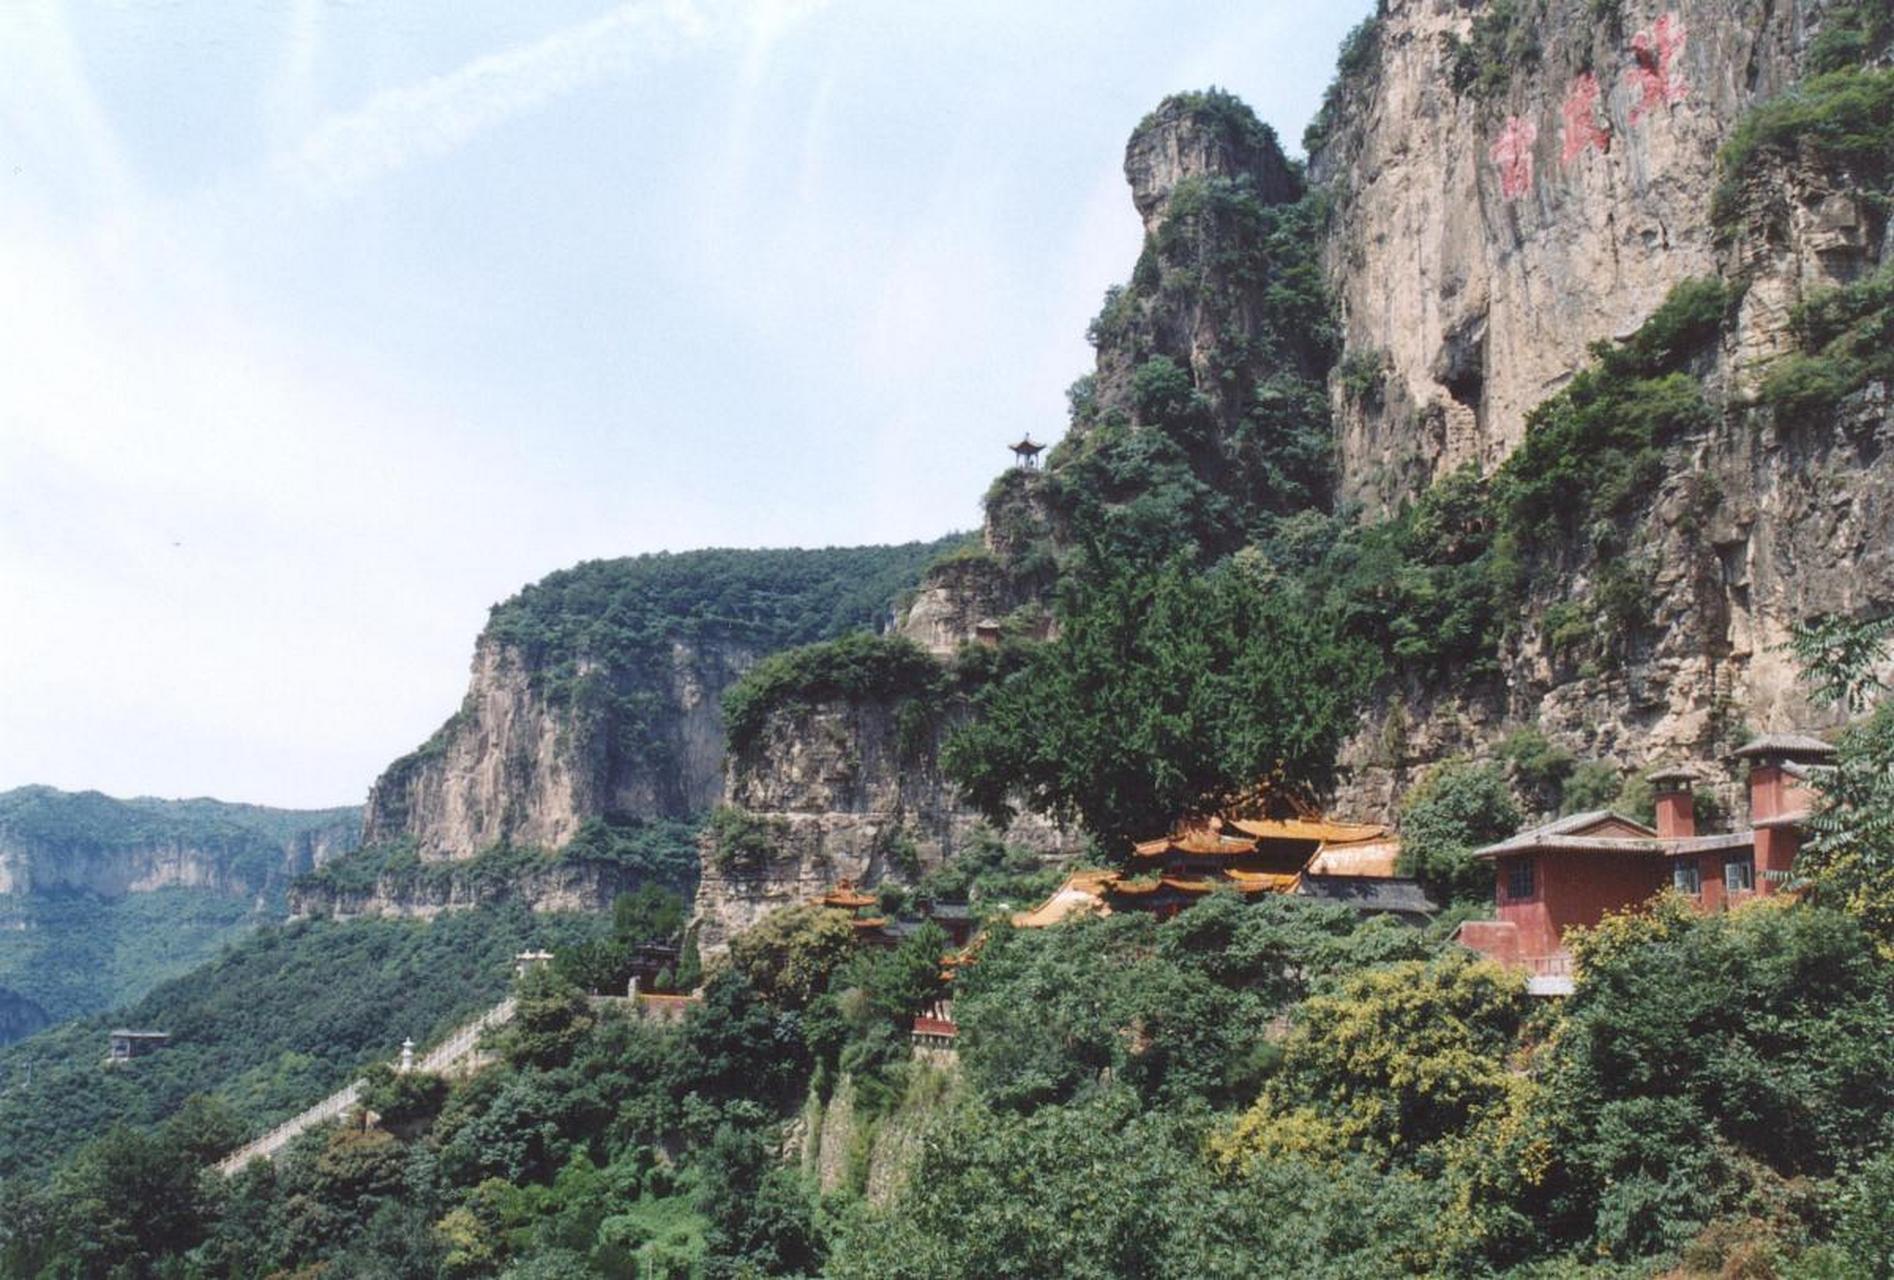 天桂山,位于河北省平山县,是一座充满自然风光和历史文化底蕴的山脉